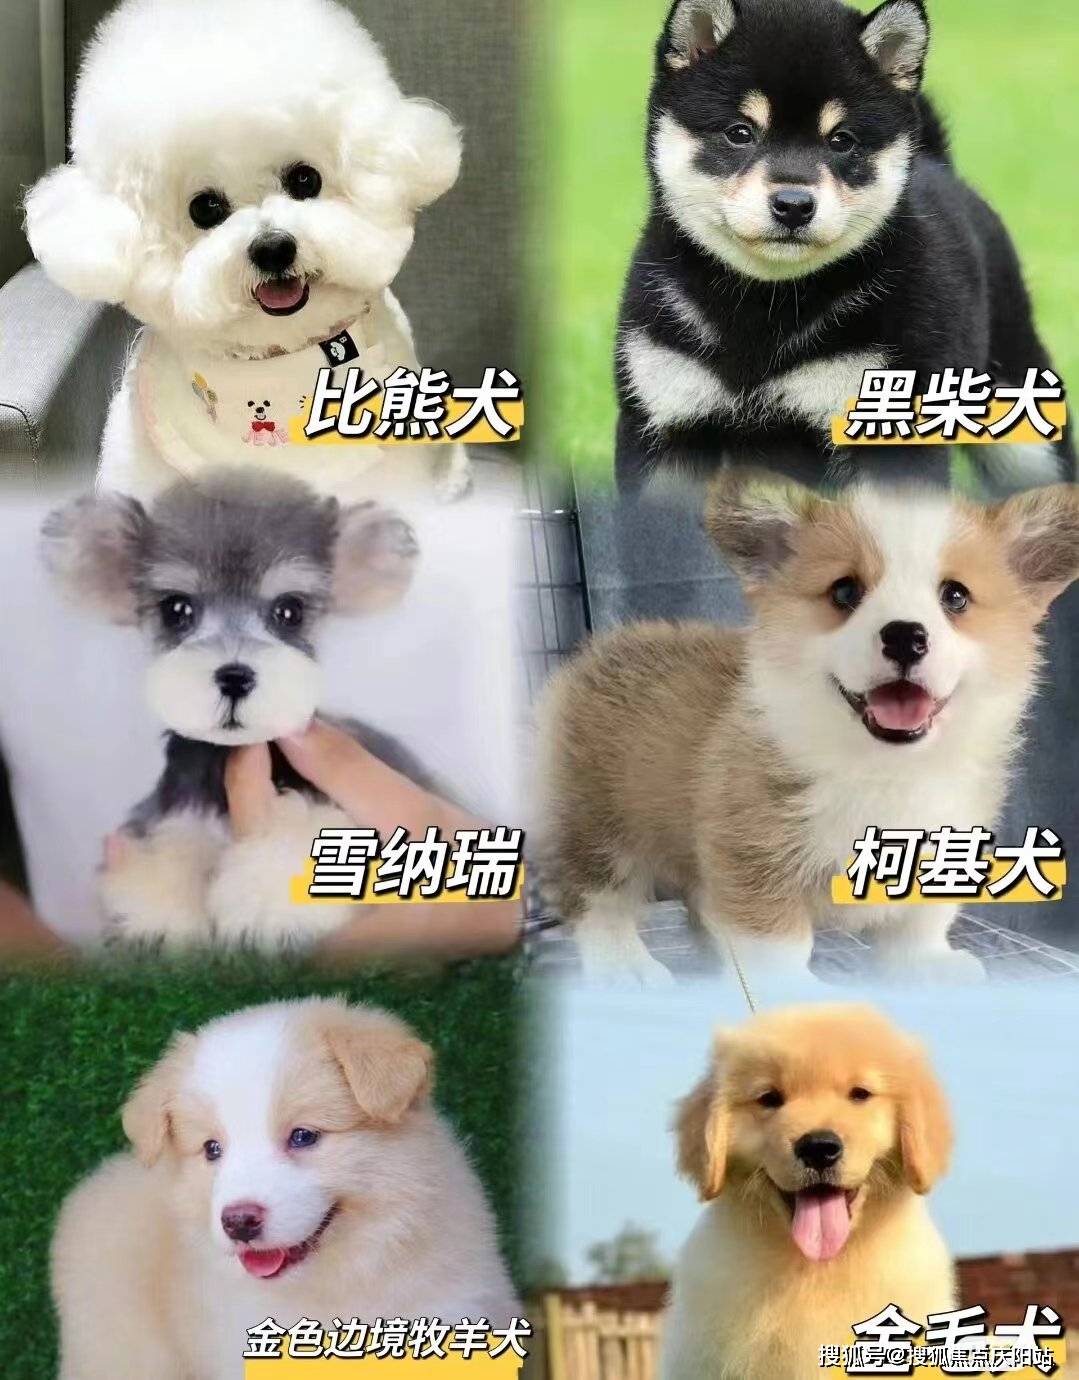 长沙买柯基犬首页网站(长沙芙蓉区)哪里可以买到品相好的柯基犬